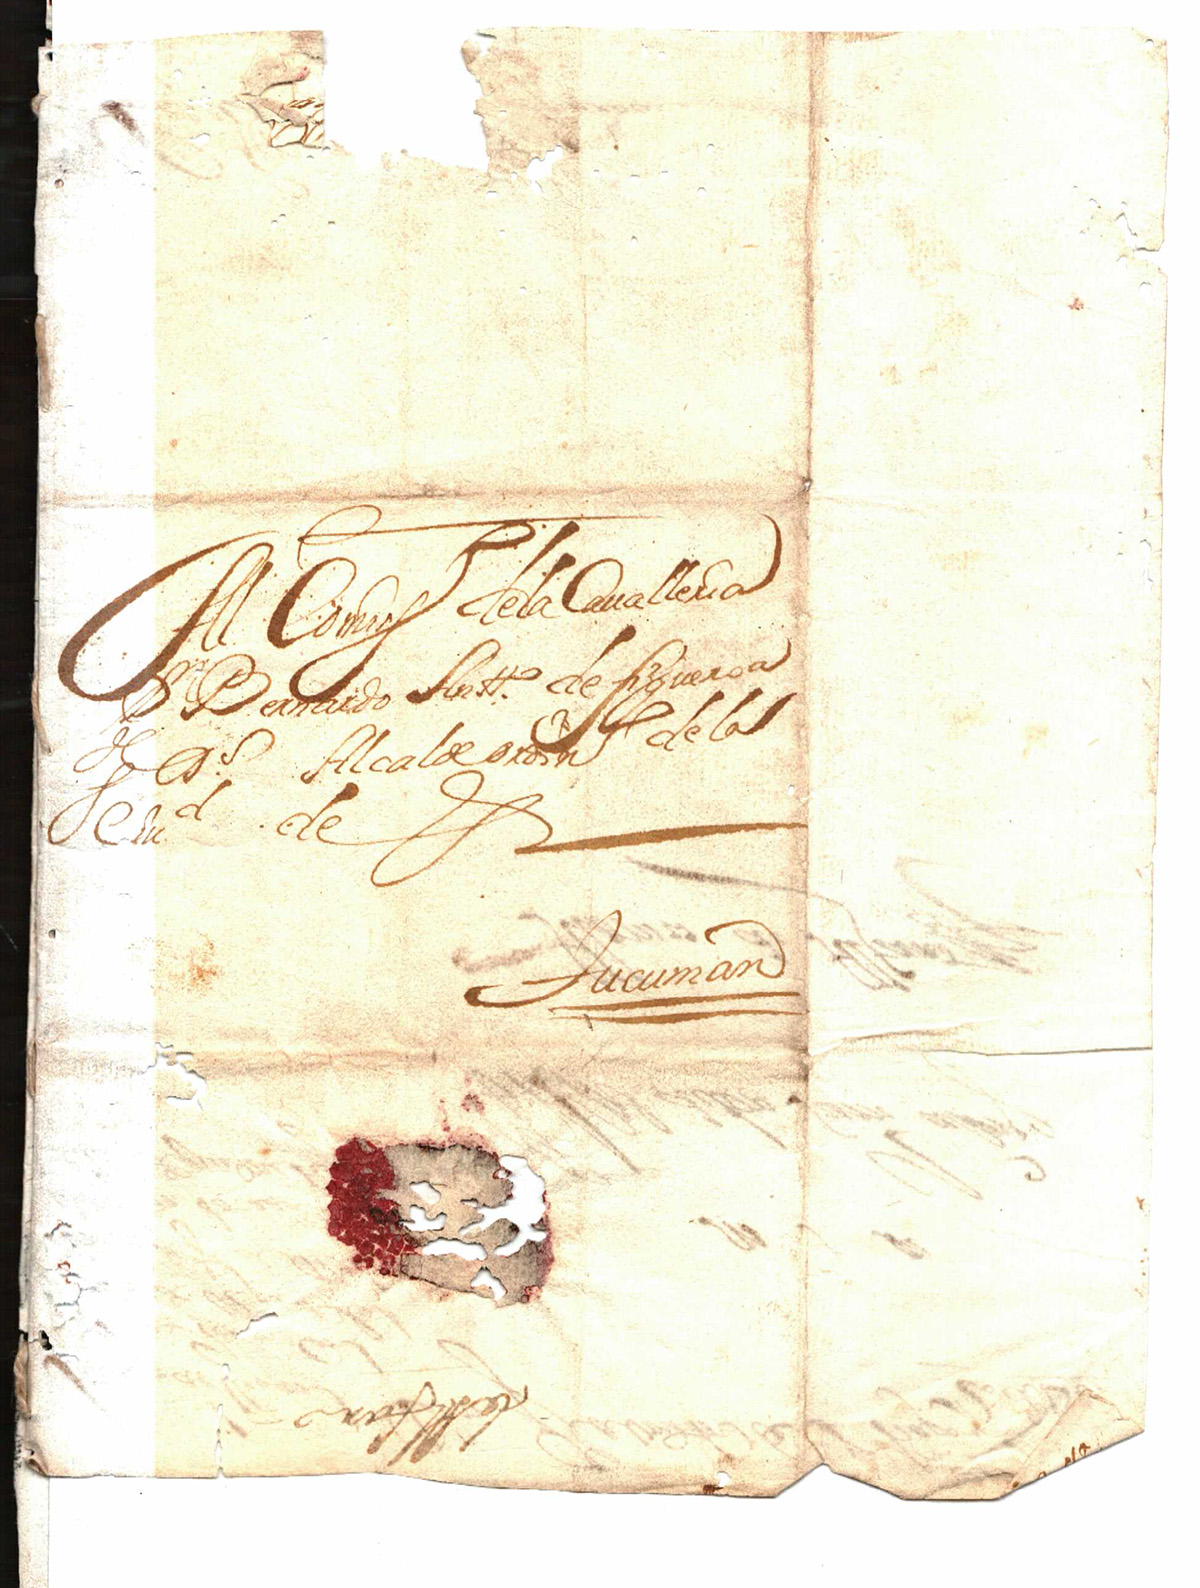 Caja 2 Exp. 1 Año 1721 f 27V